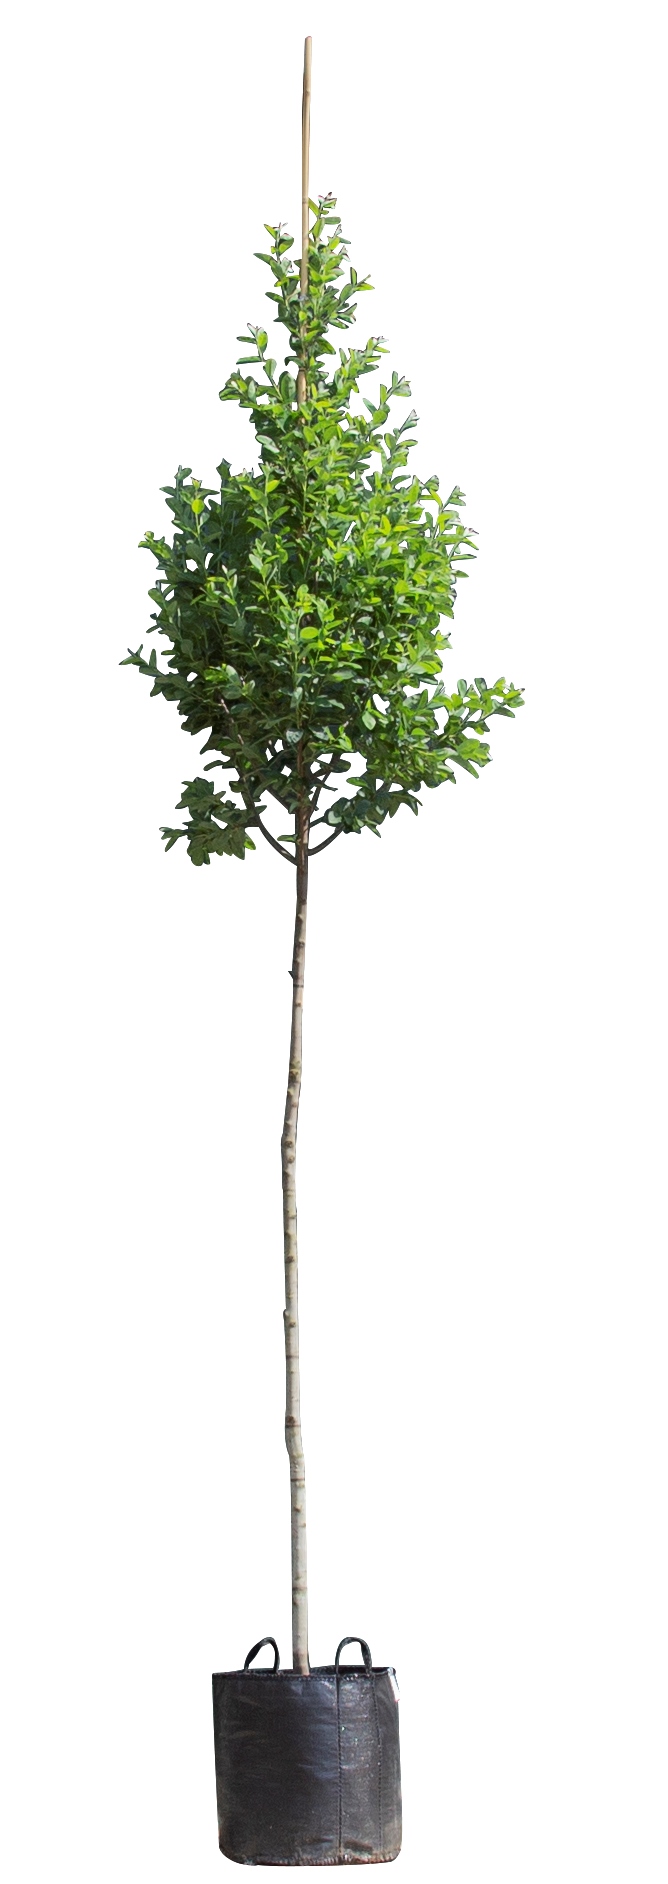 Zuil krentenboom Amelanchier can. Rainbow Pillar 350 cm - Warentuin Natuurlijk